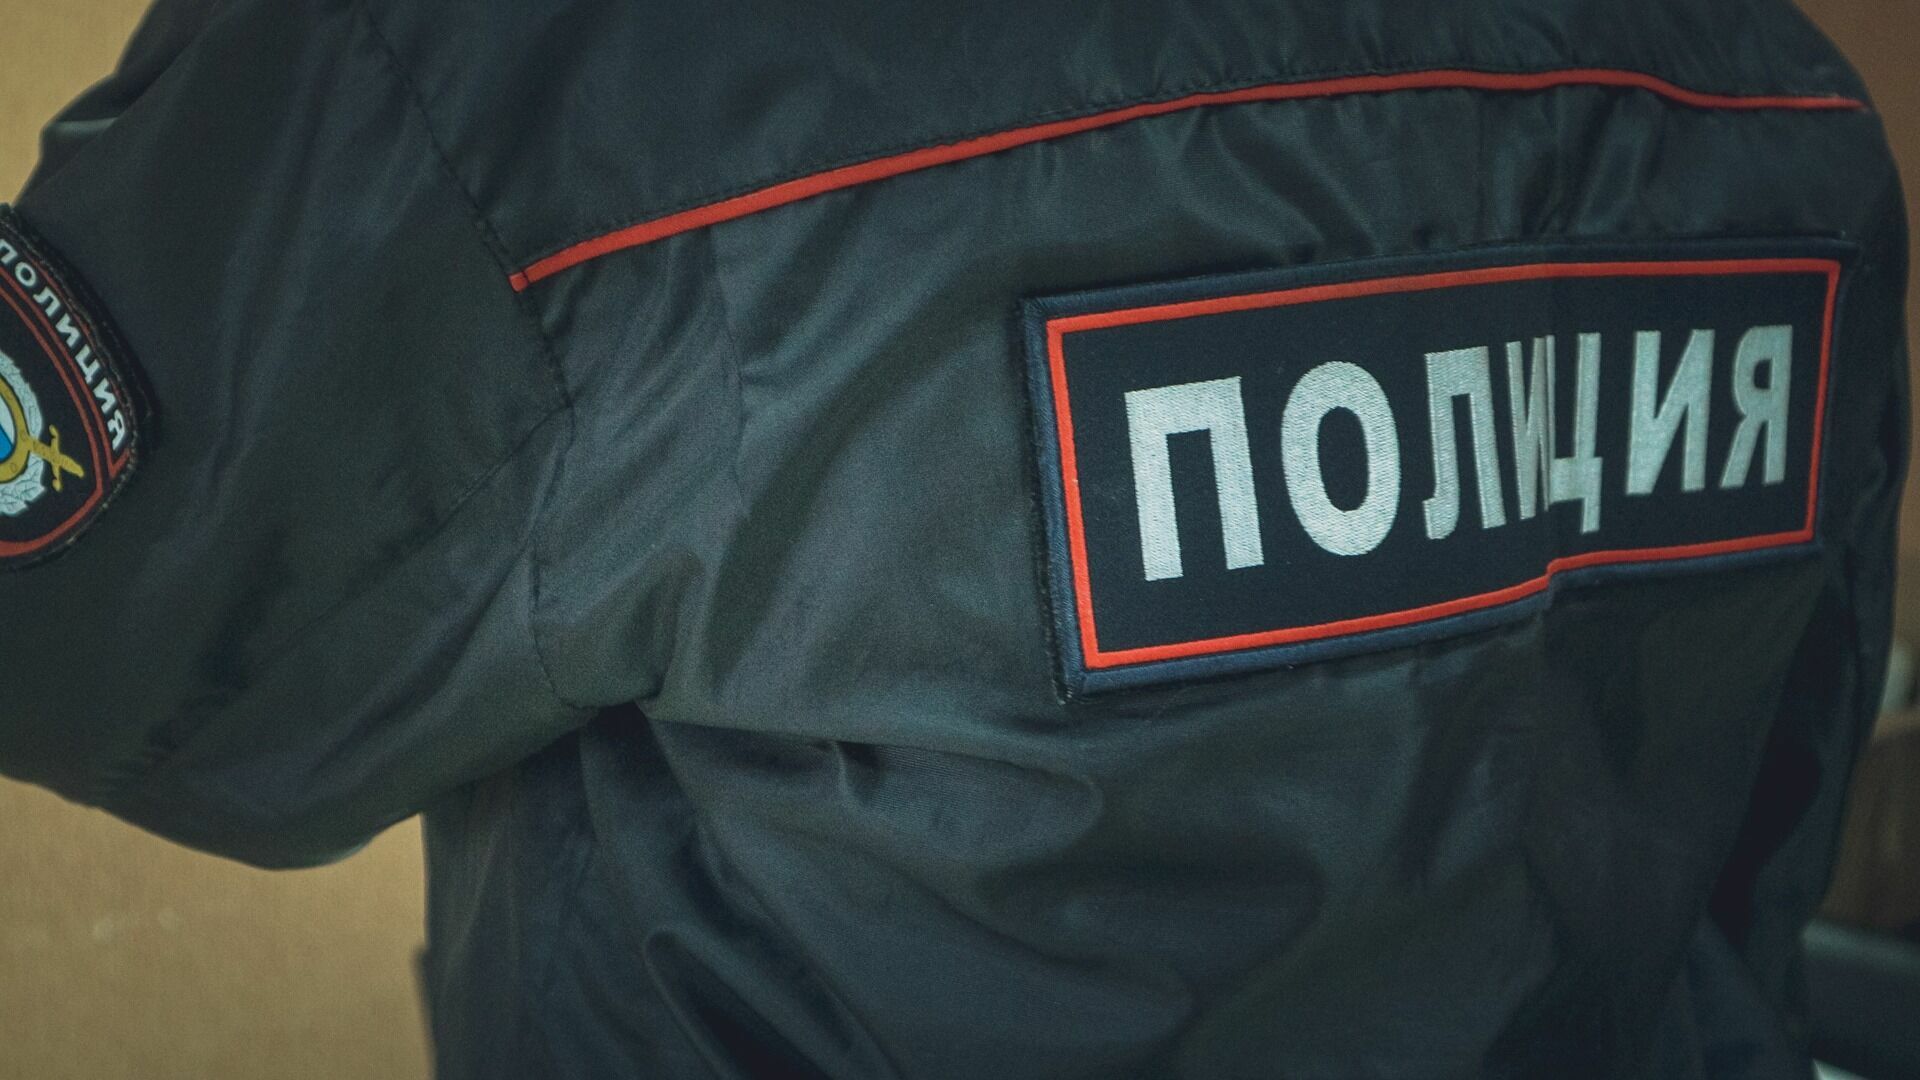  Под Новосибирском полицейский спас замерзающего мужчину